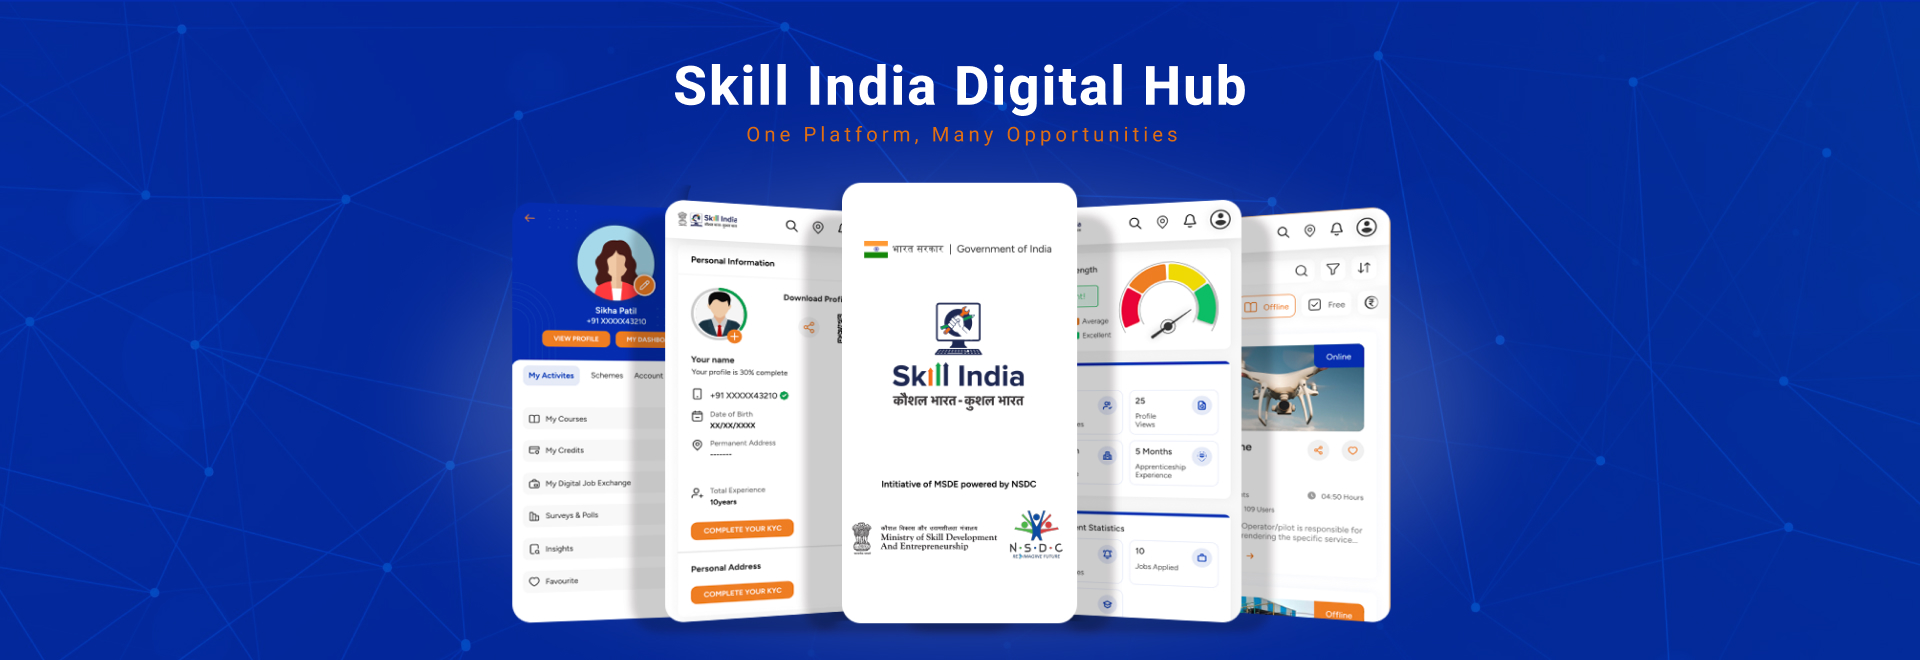 www.skillindiadigital.gov.in